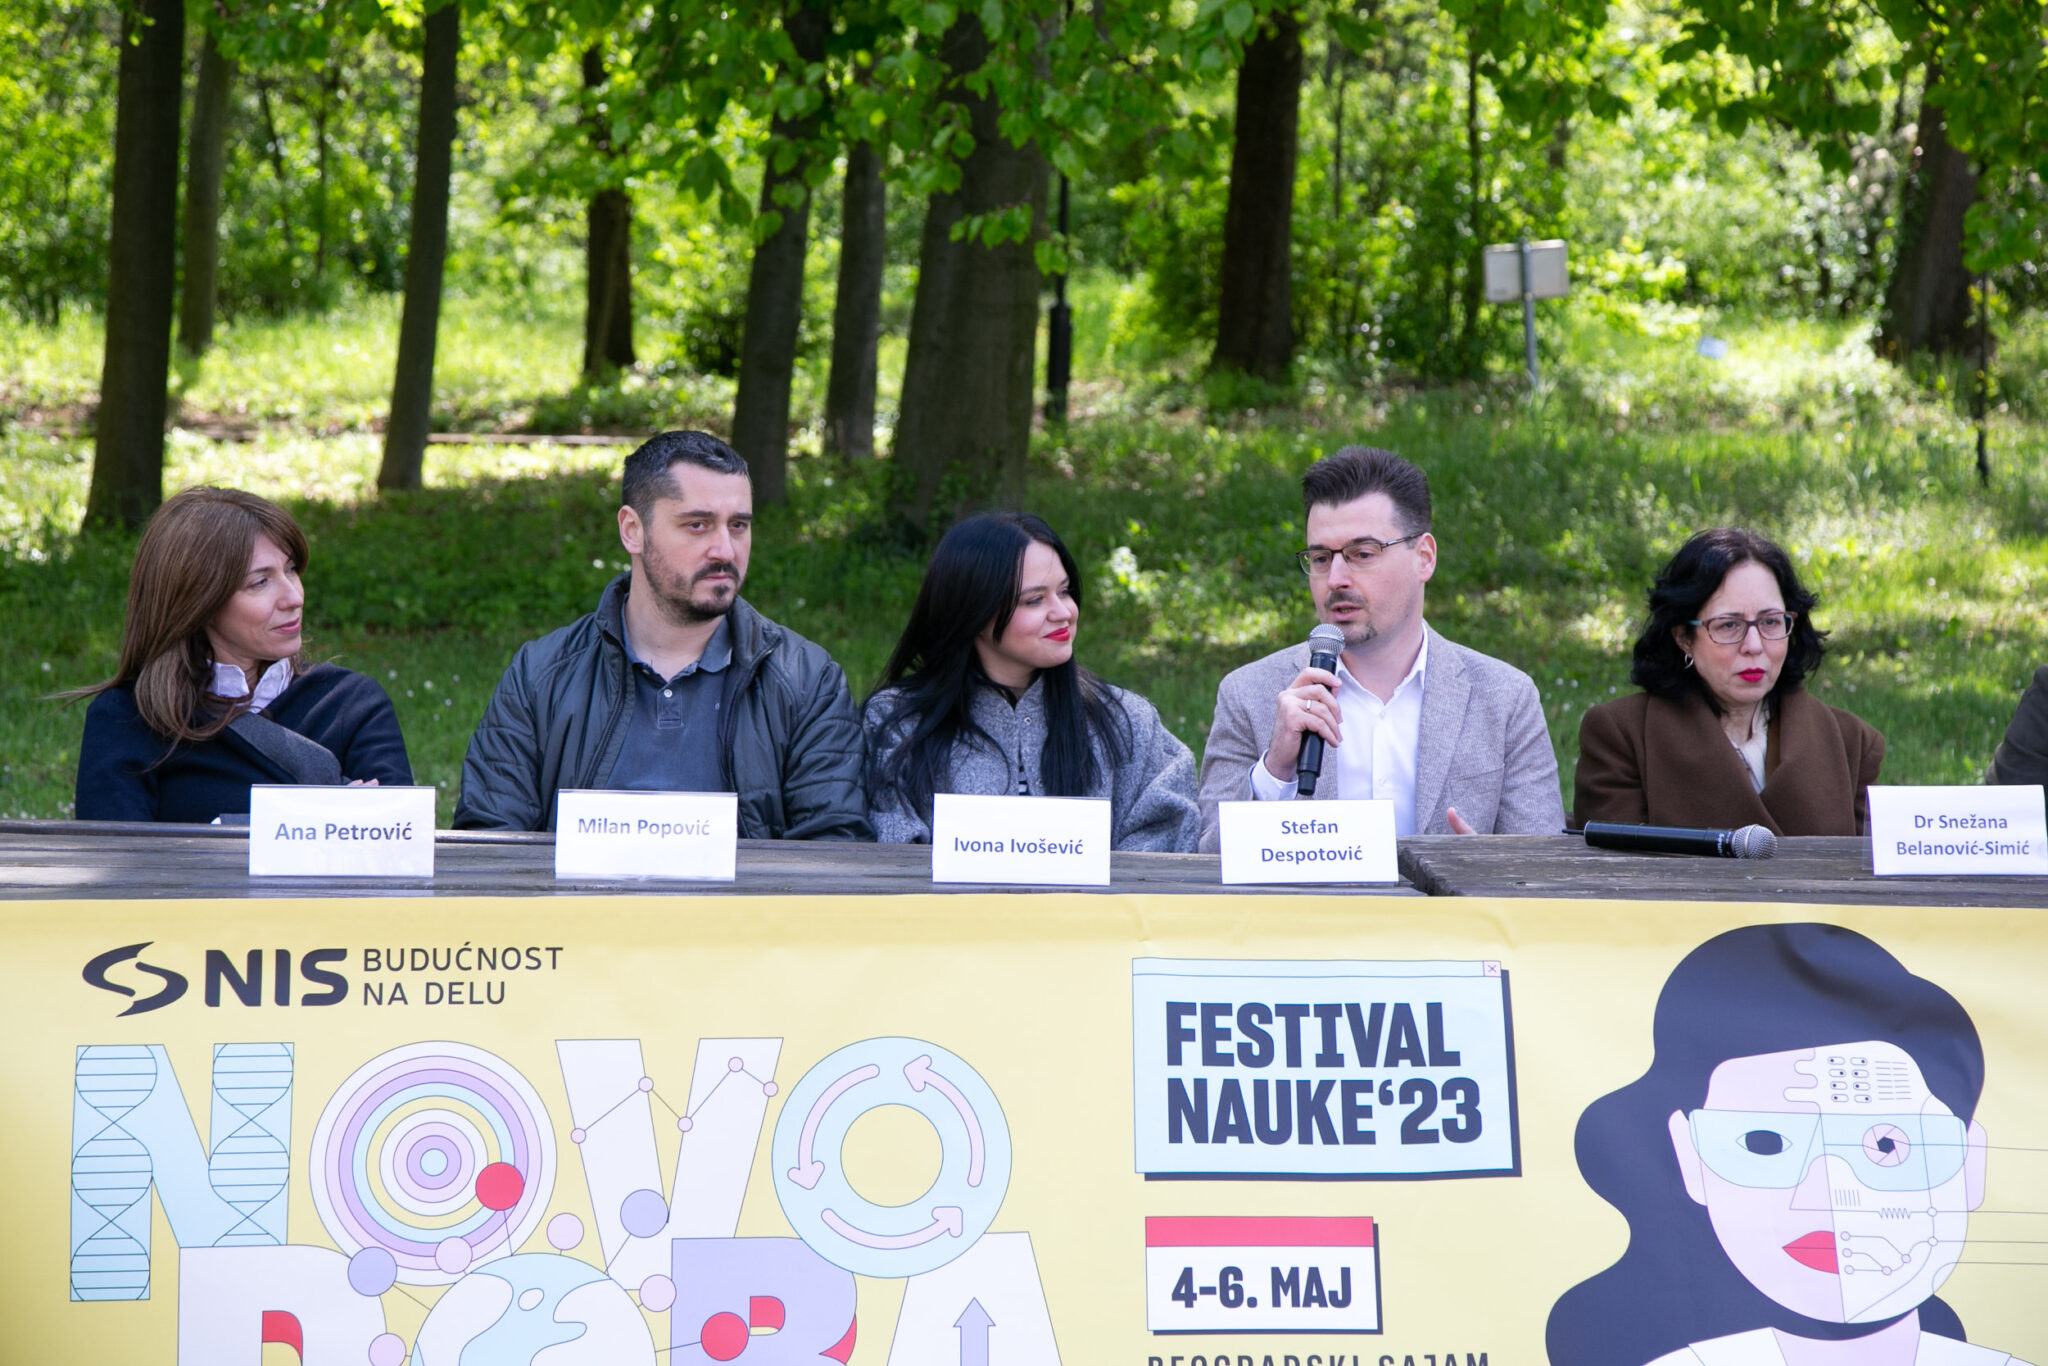 NIS:  Festival nauke od 4. DO 6. maja na Beogradskom sajmu